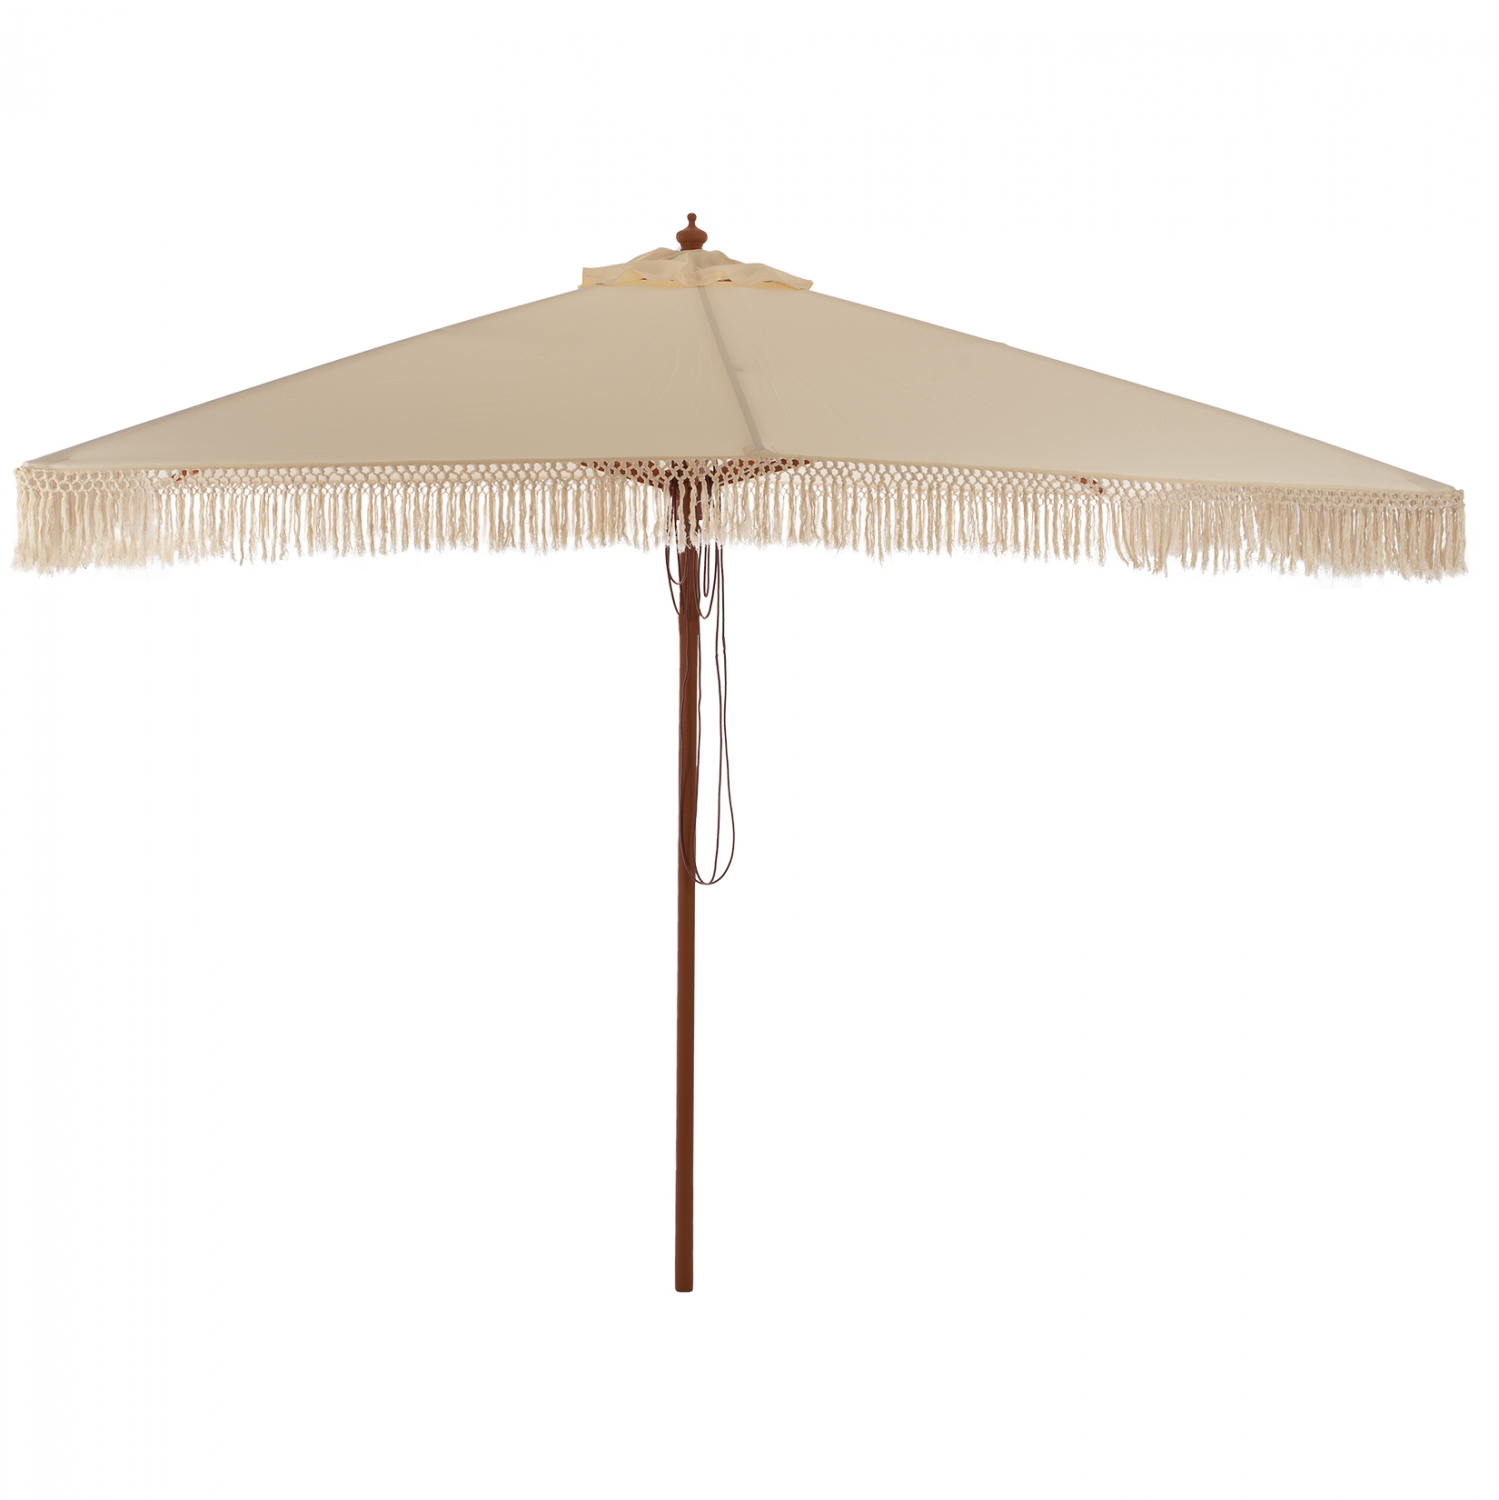 Ομπρέλα επαγγελματική “WAGNER” από ξύλο/ύφασμα σε μπεζ χρώμα Φ300×250